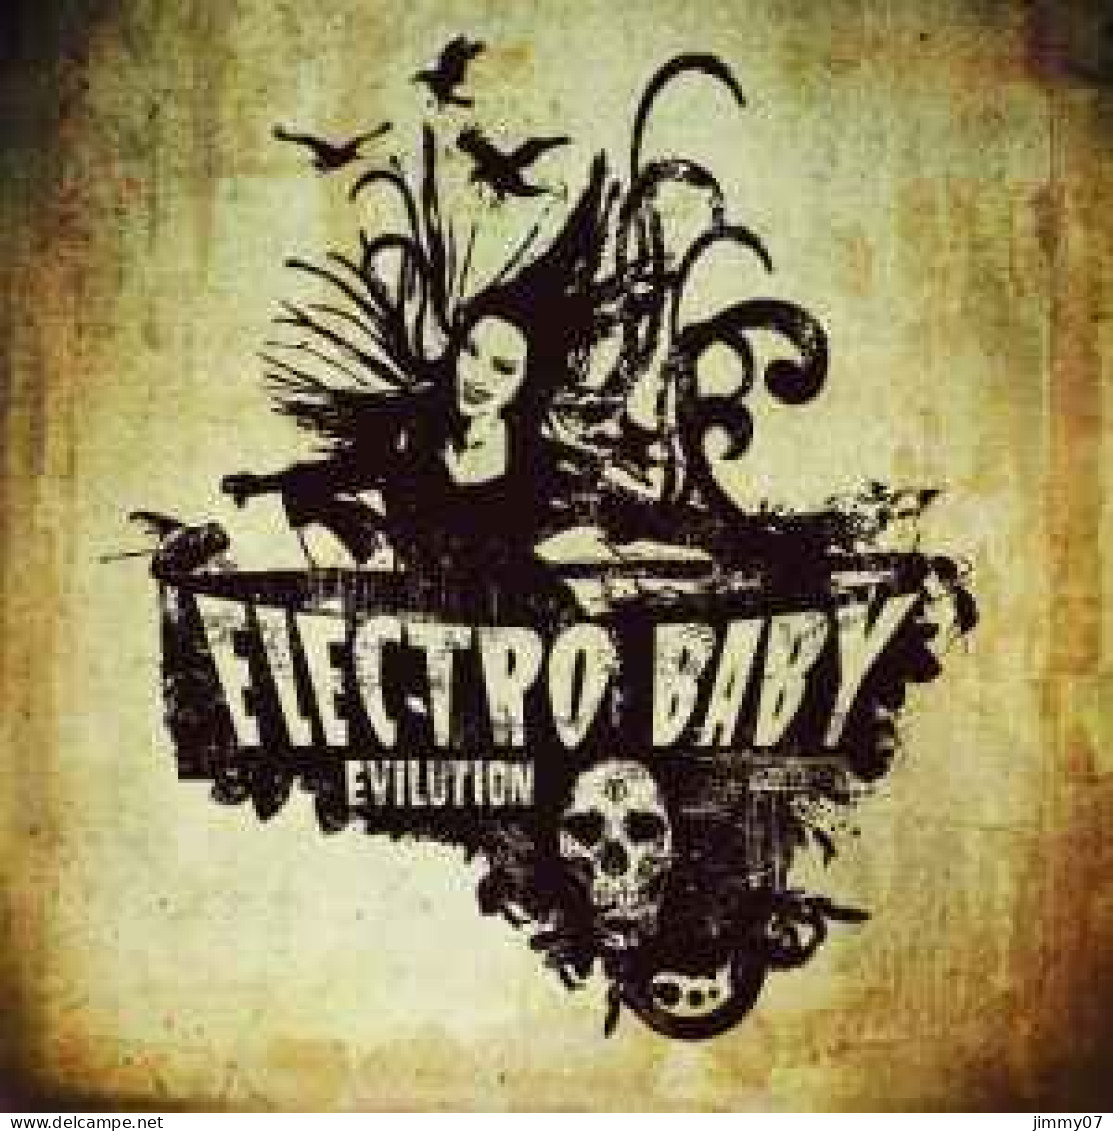 Electro Baby - Evilution (CD, Album) - Rock